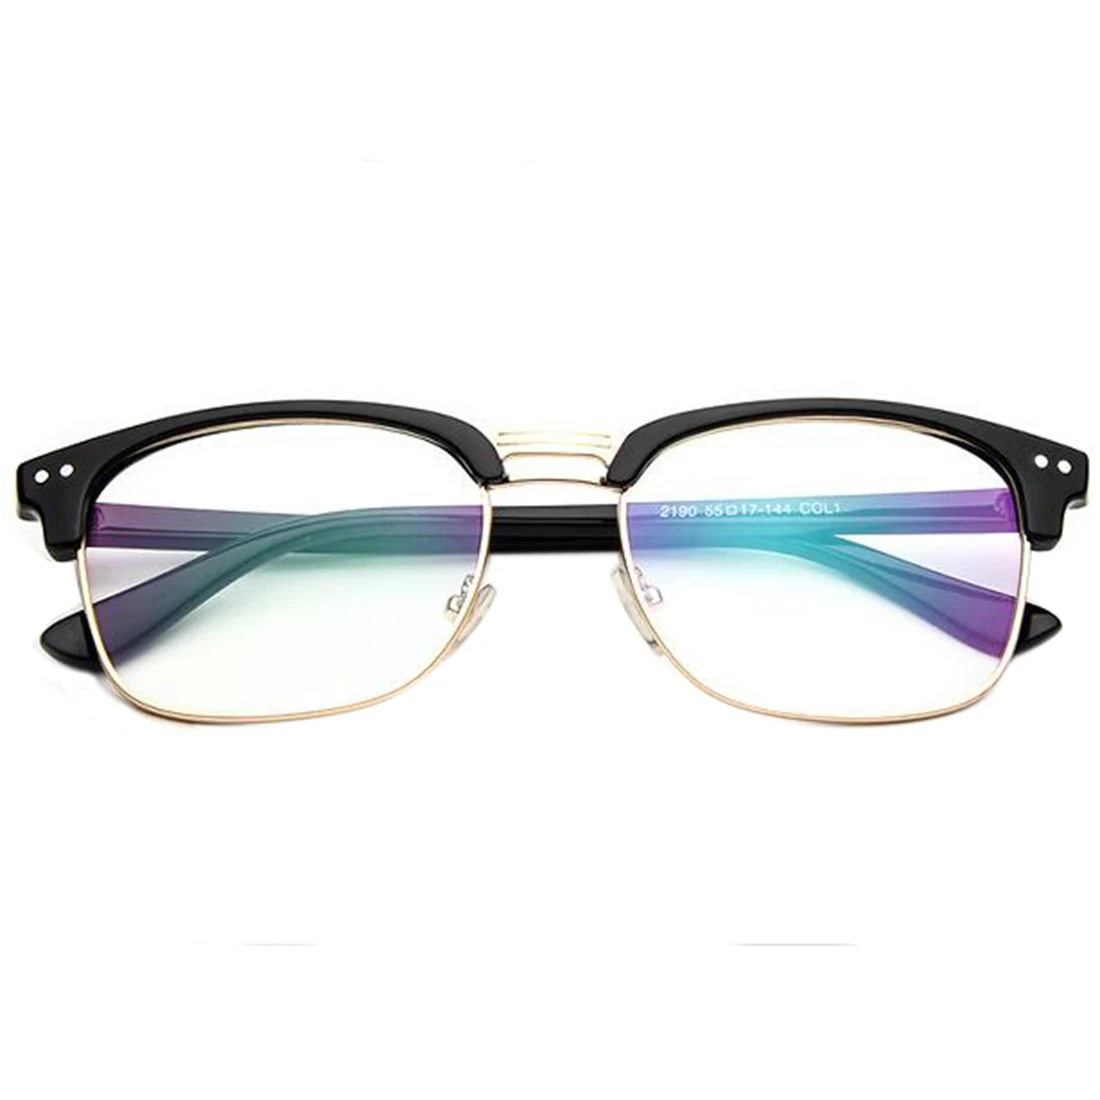 Стиль, очки против радиации, Простые Стеклянные очки для женщин и мужчин, очки для чтения с защитой от ультрафиолета, прозрачные линзы, очки для глаз, цветные, оптика